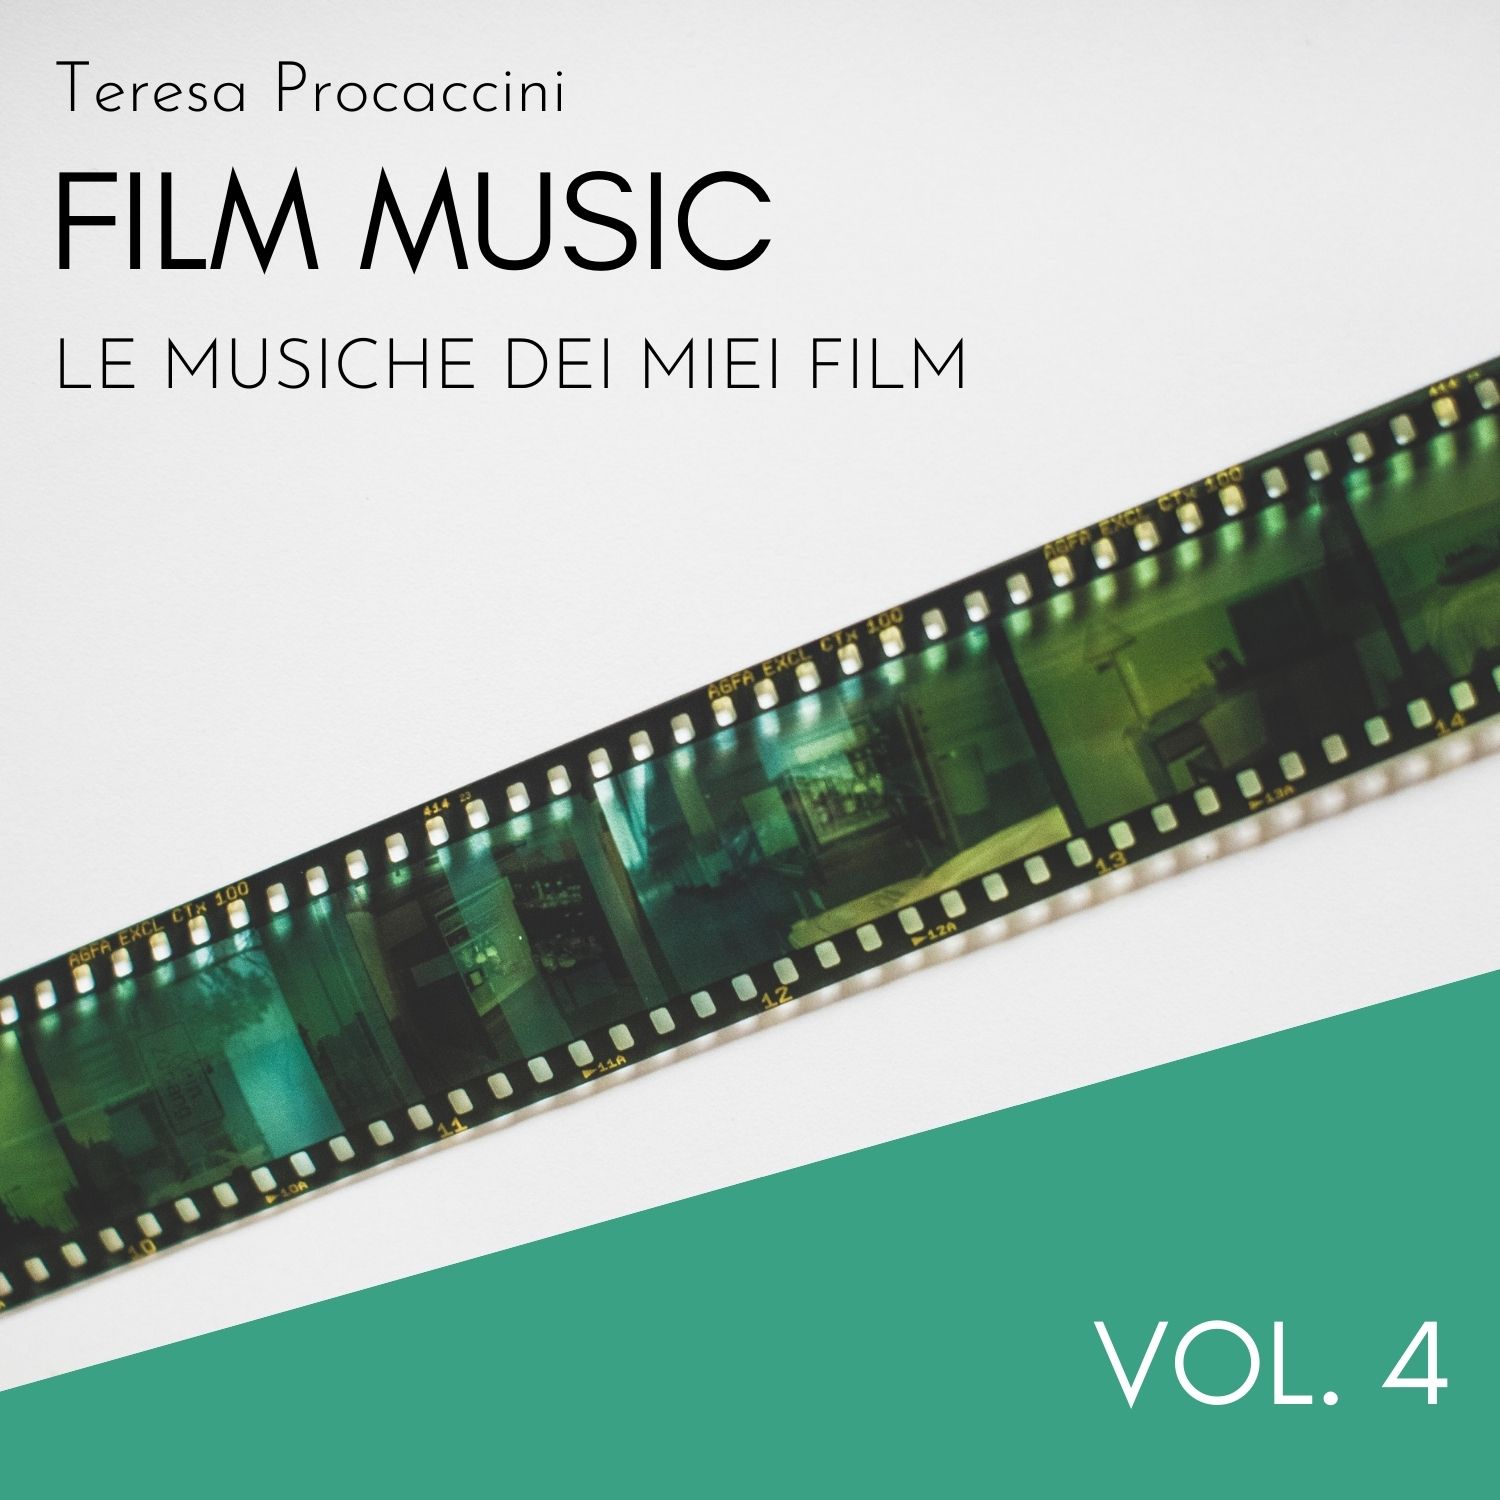 Film Music Vol. 4